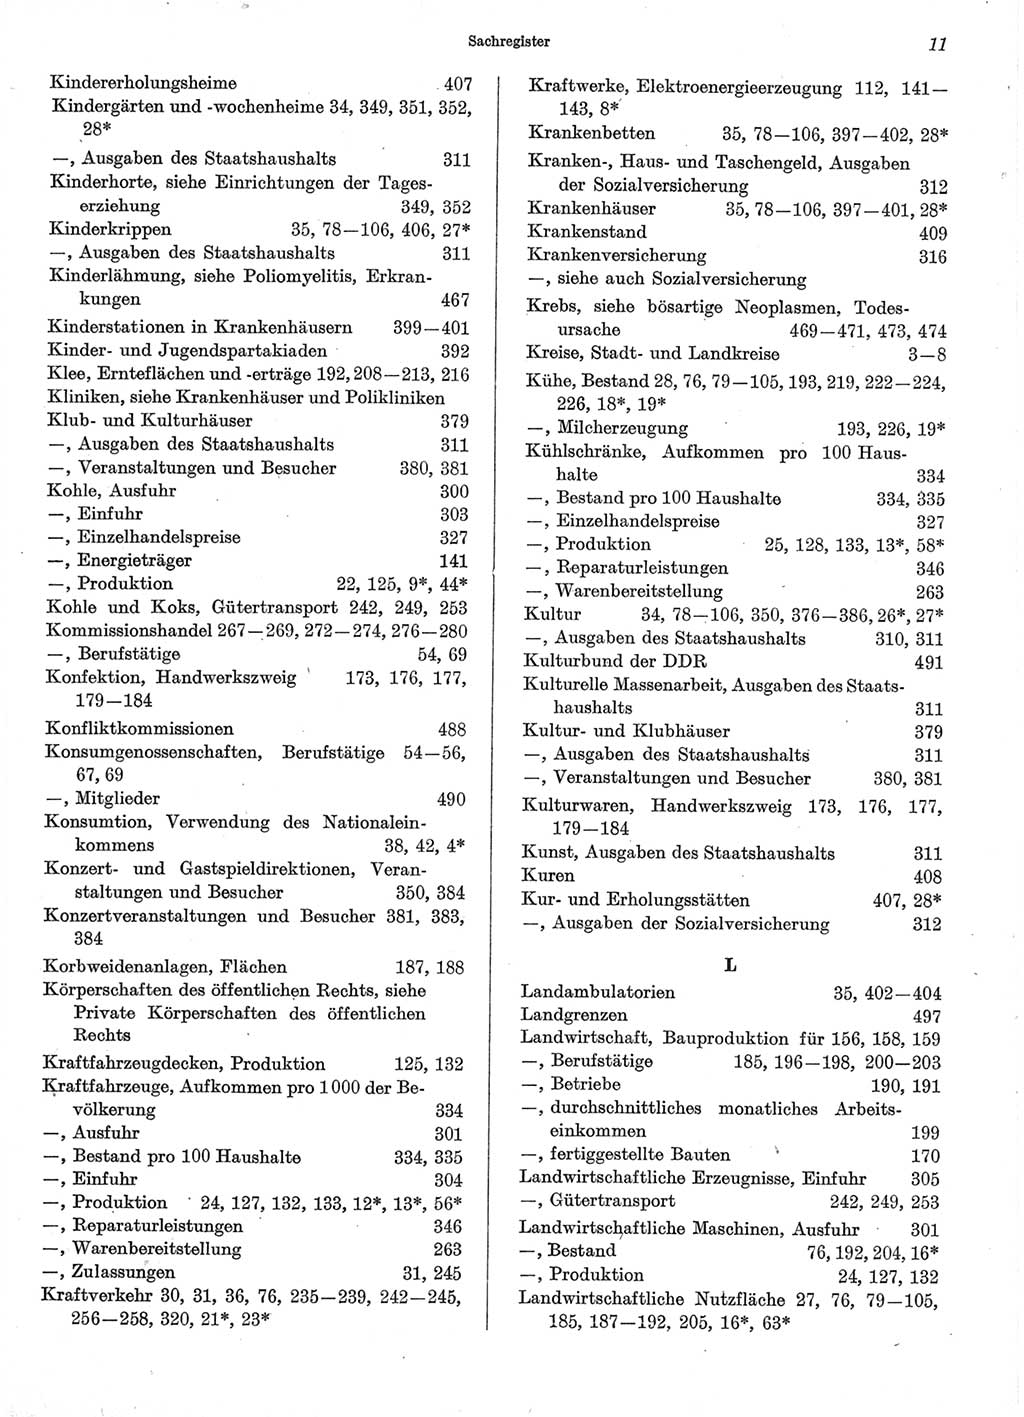 Statistisches Jahrbuch der Deutschen Demokratischen Republik (DDR) 1974, Seite 11 (Stat. Jb. DDR 1974, S. 11)